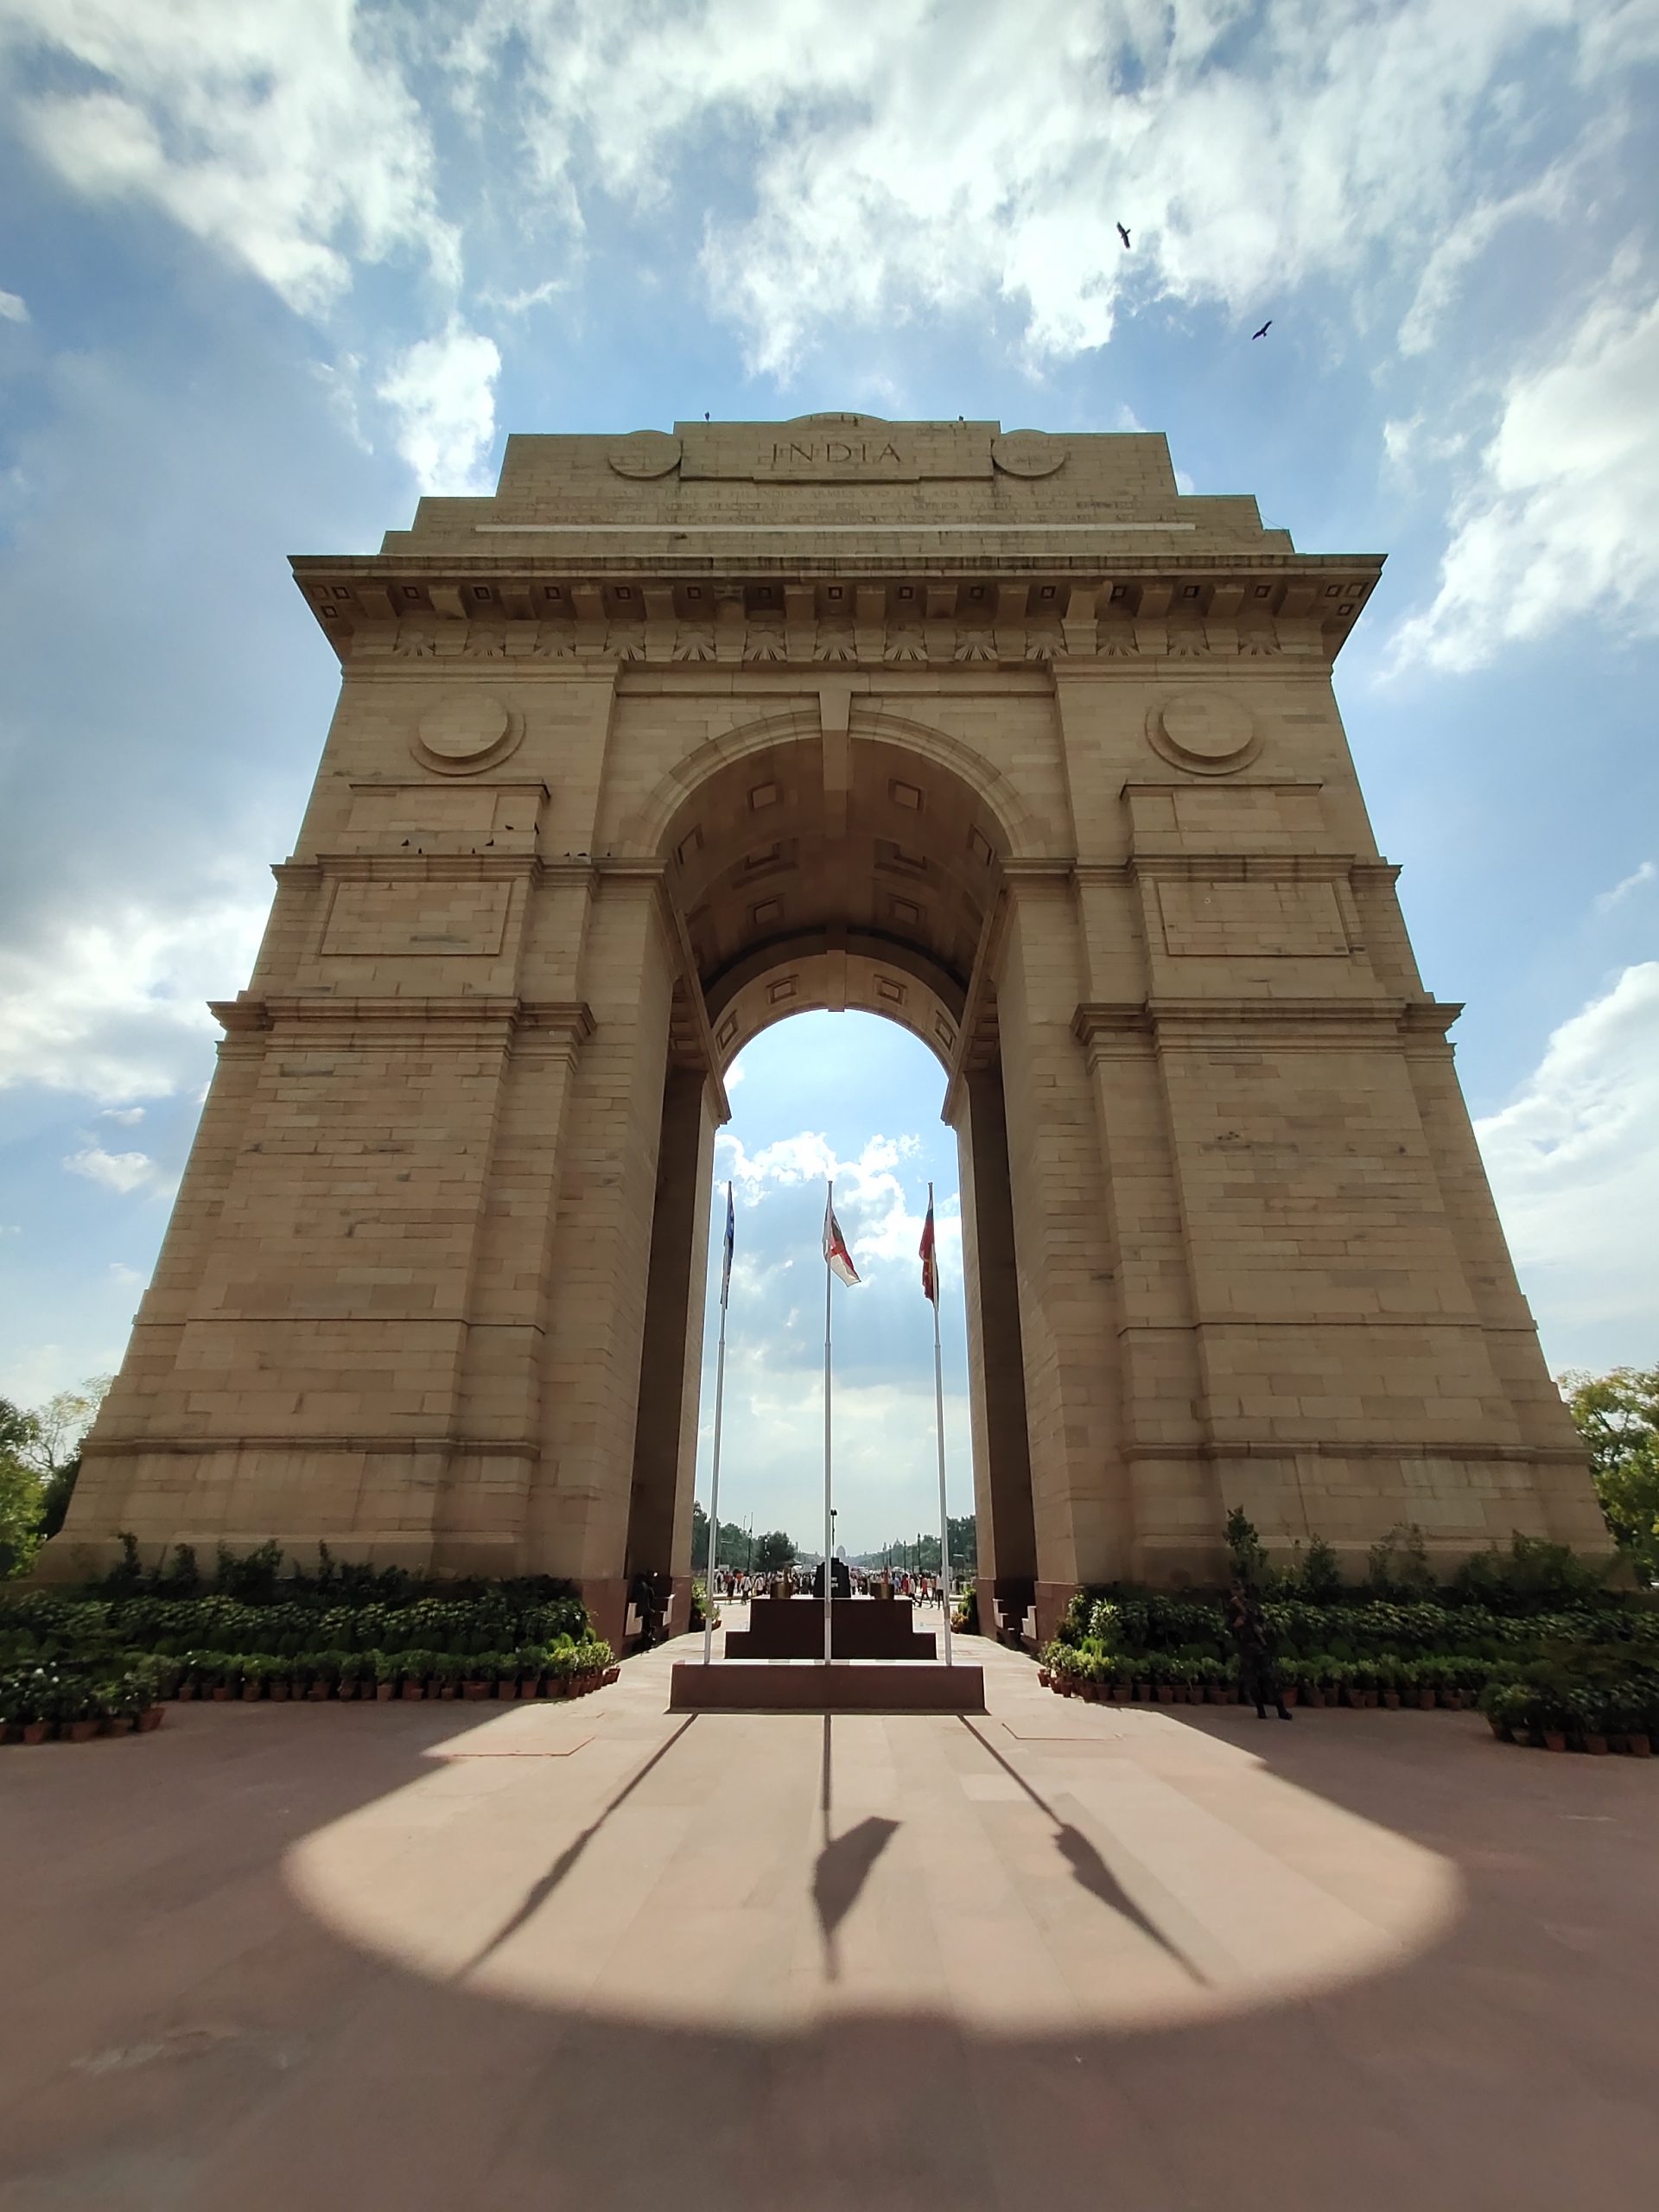 India gate monument